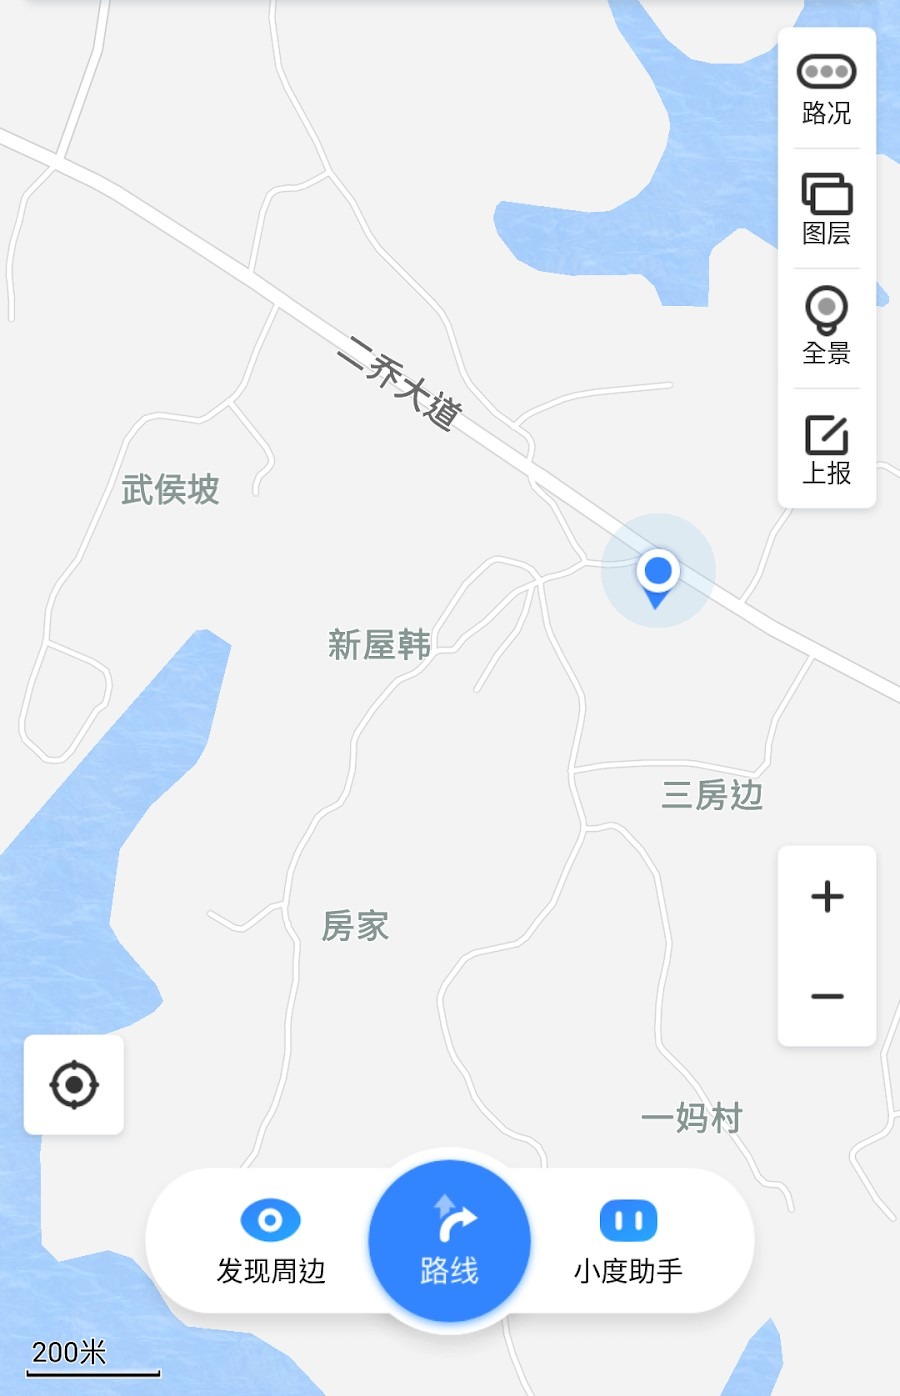 地圖標示「武侯坡」碑記的所在位置。